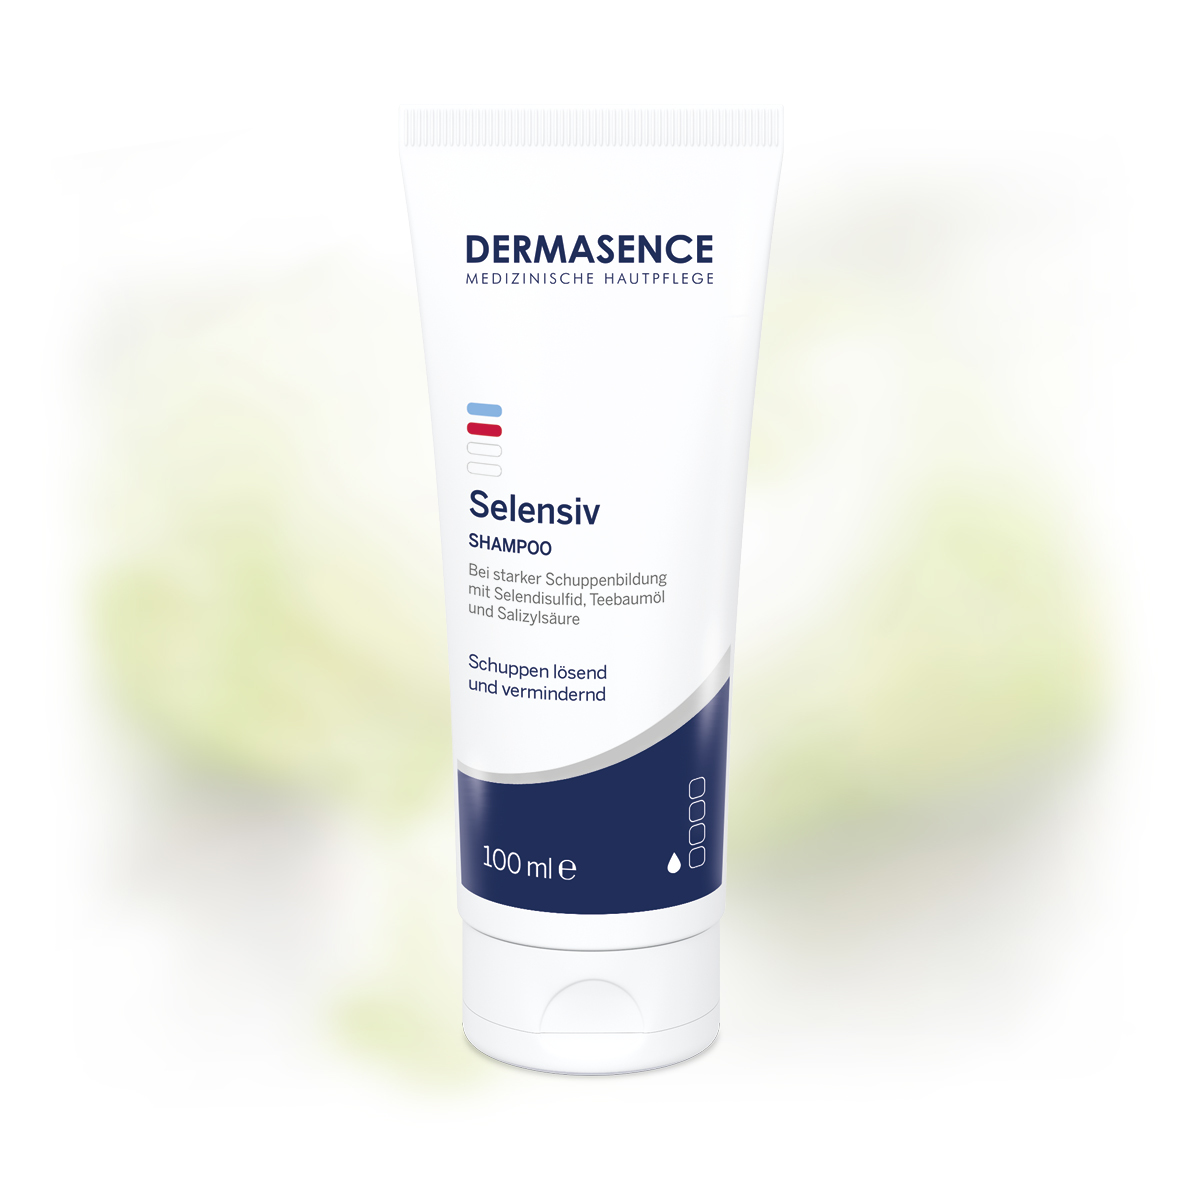 DERMASENCE Selensiv Shampoo, 200 ml